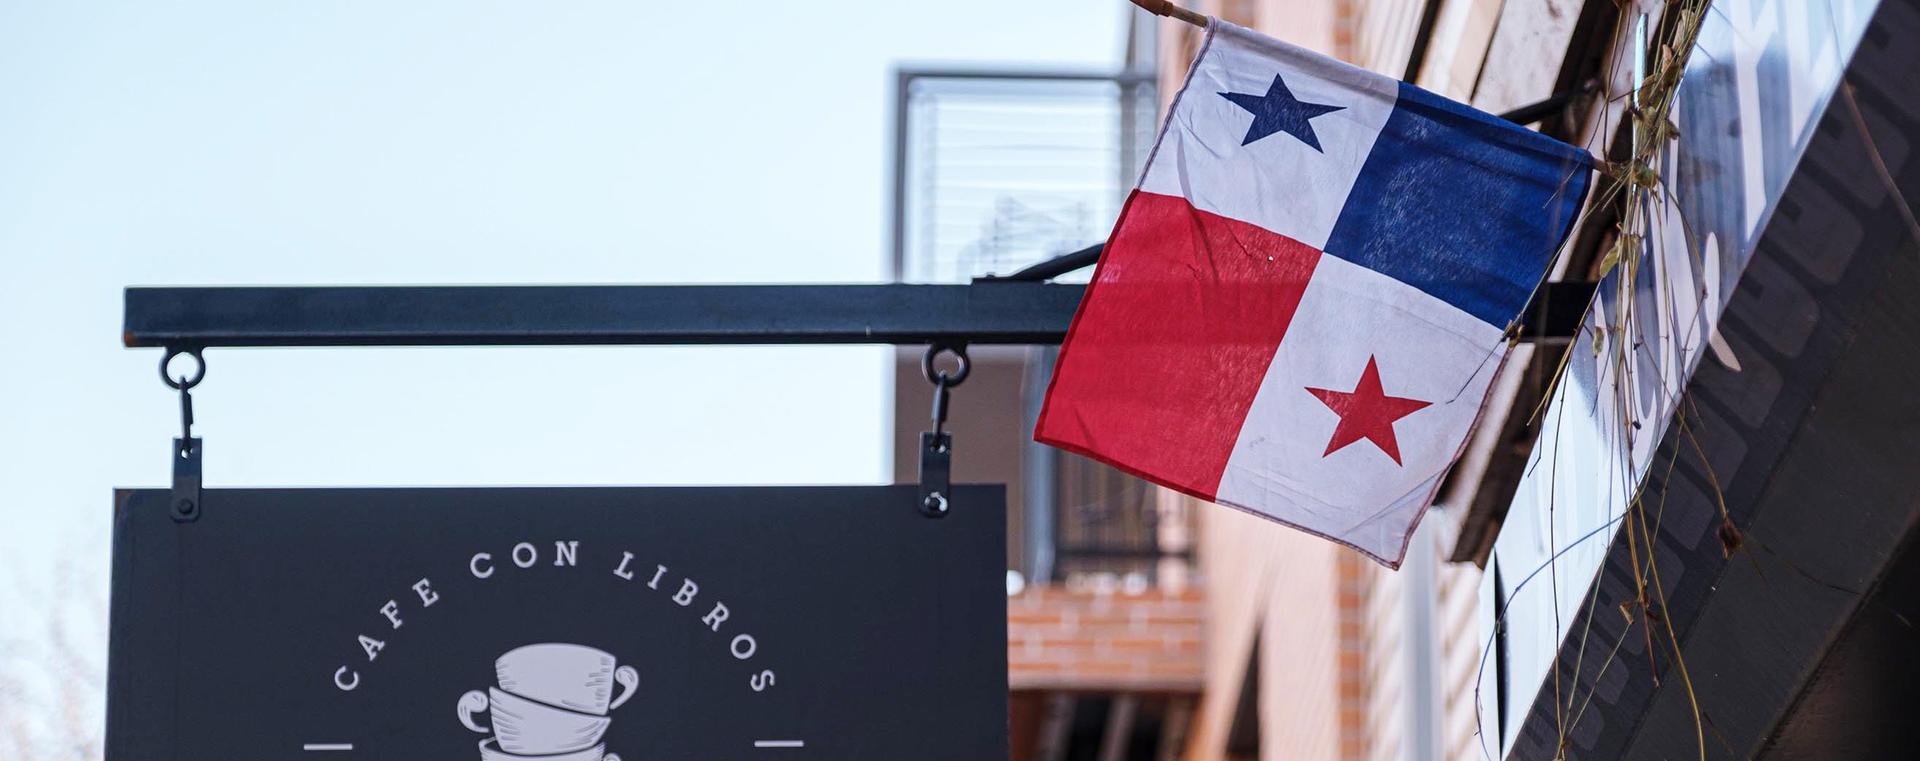 Panamanian flag at Cafe con Libros